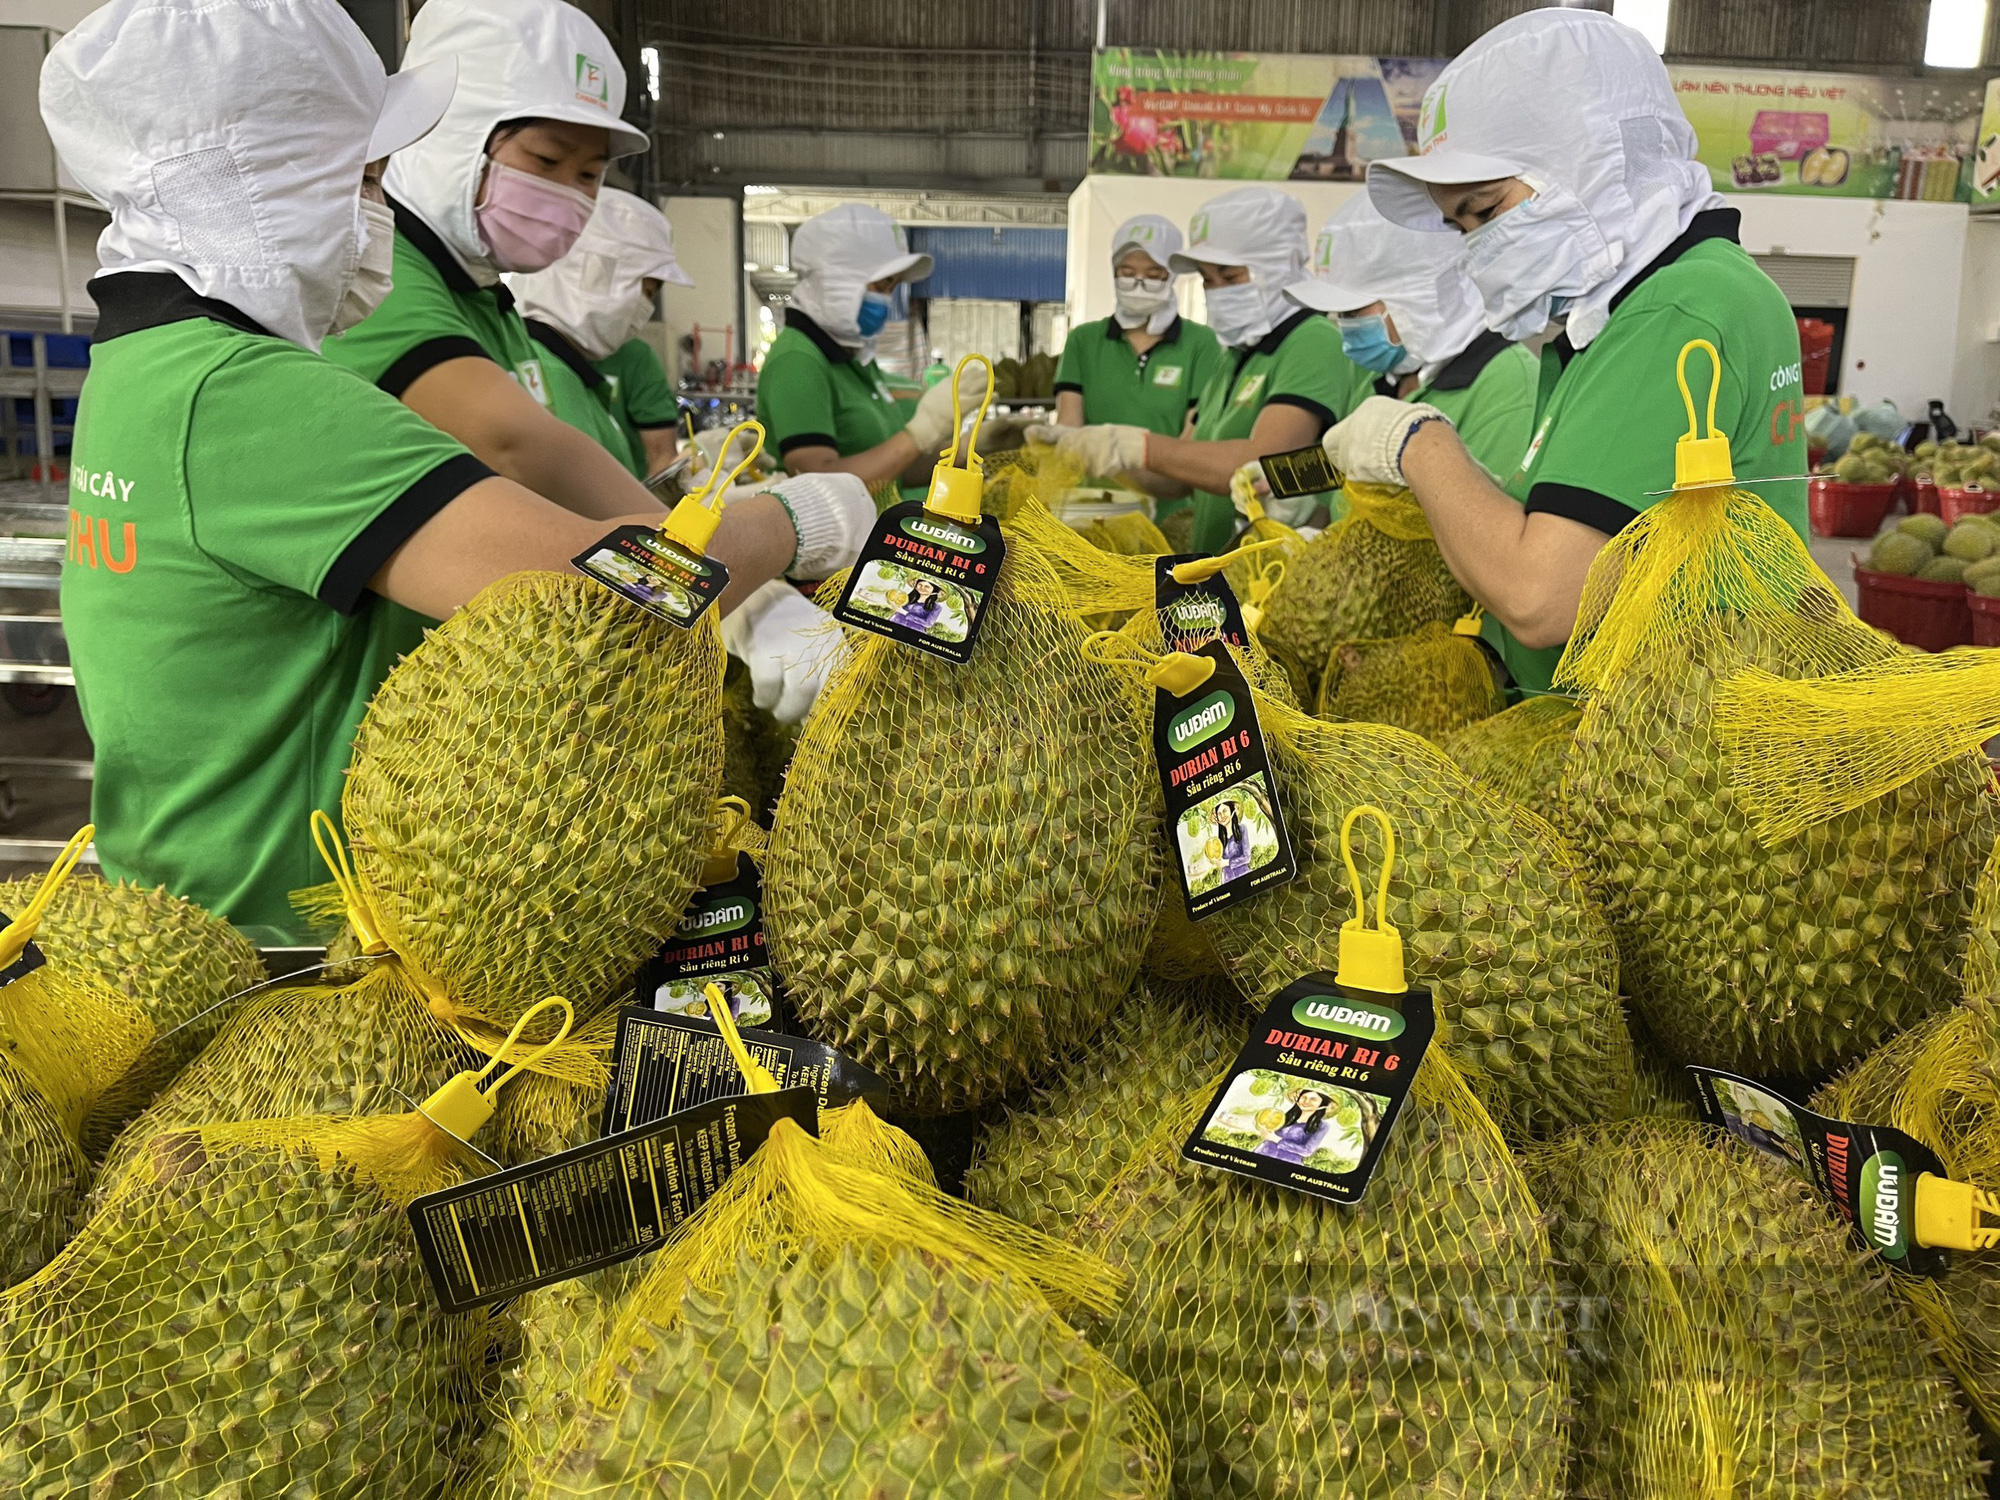 Trung Quốc thích mua nhiều loại trái cây Việt Nam, doanh nghiệp làm gì để nắm bắt cơ hội? - Ảnh 1.